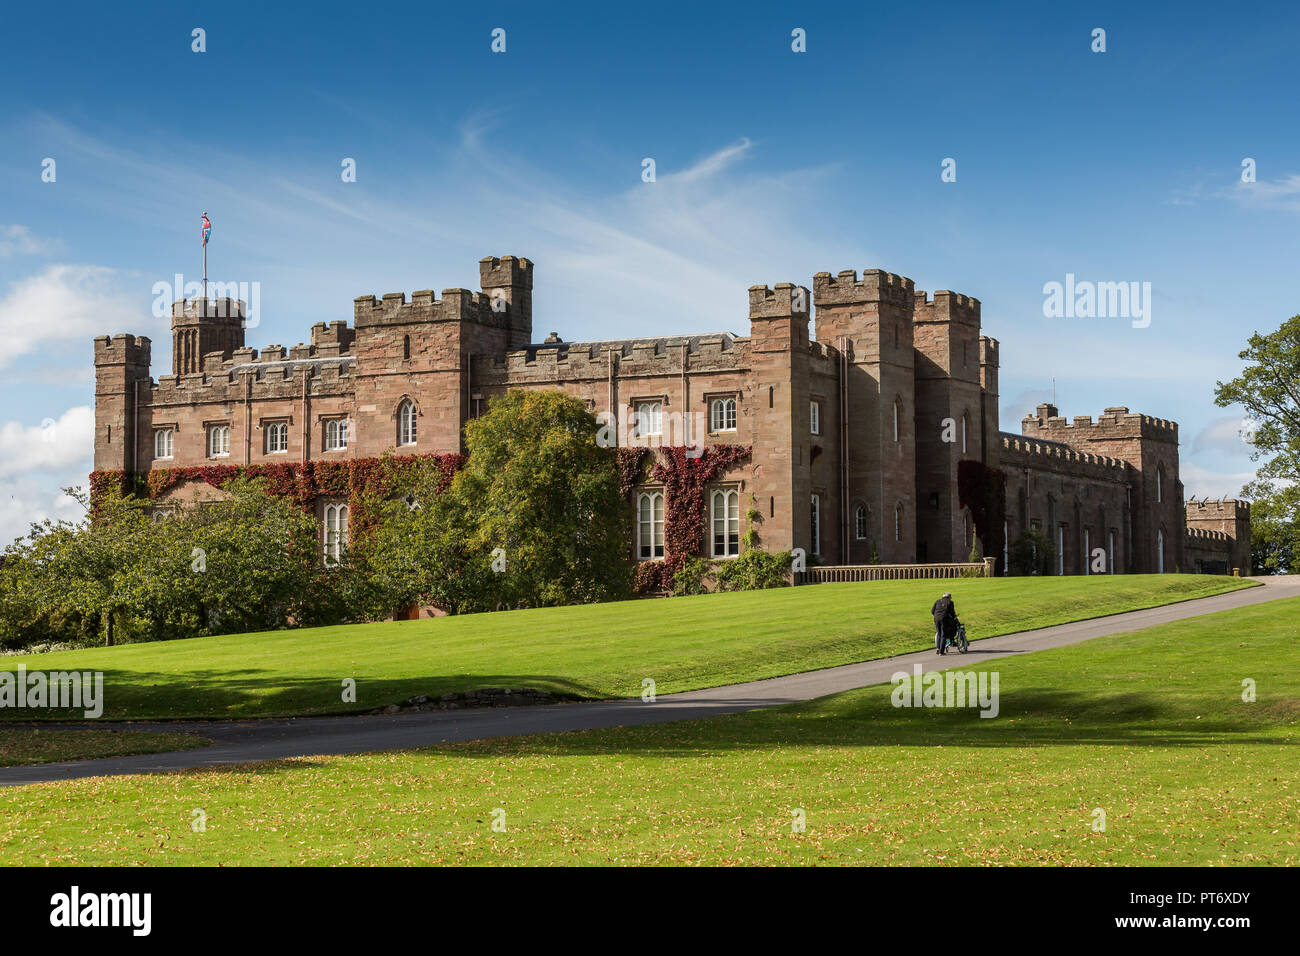 Scone Palace vicino alla città di Perth in Scozia, Regno Unito Foto Stock